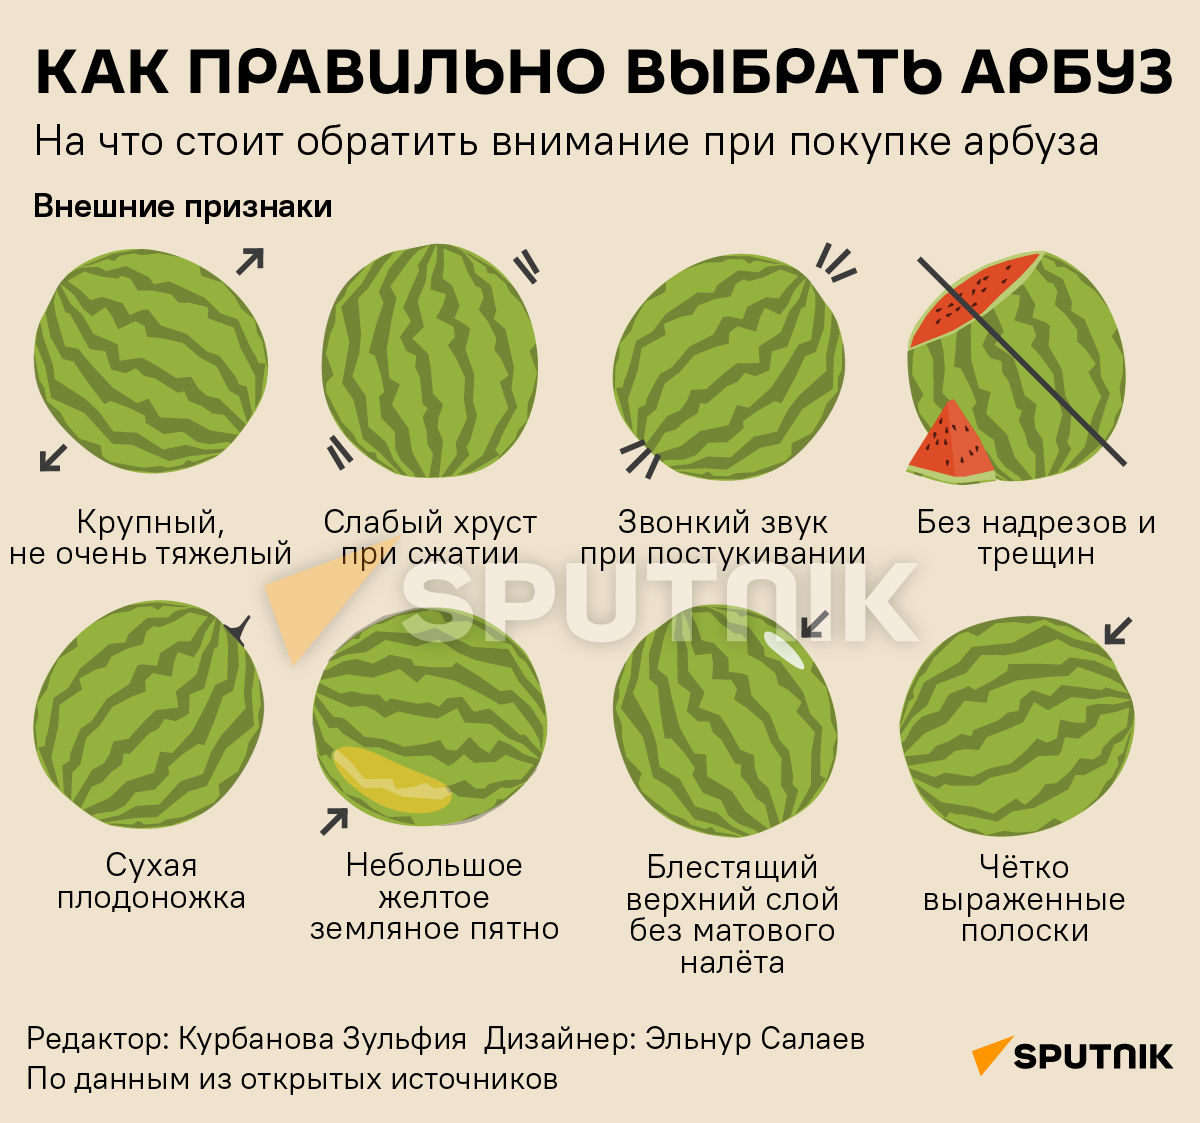 Инфографика: Как правильно выбирать арбуз - Sputnik Азербайджан